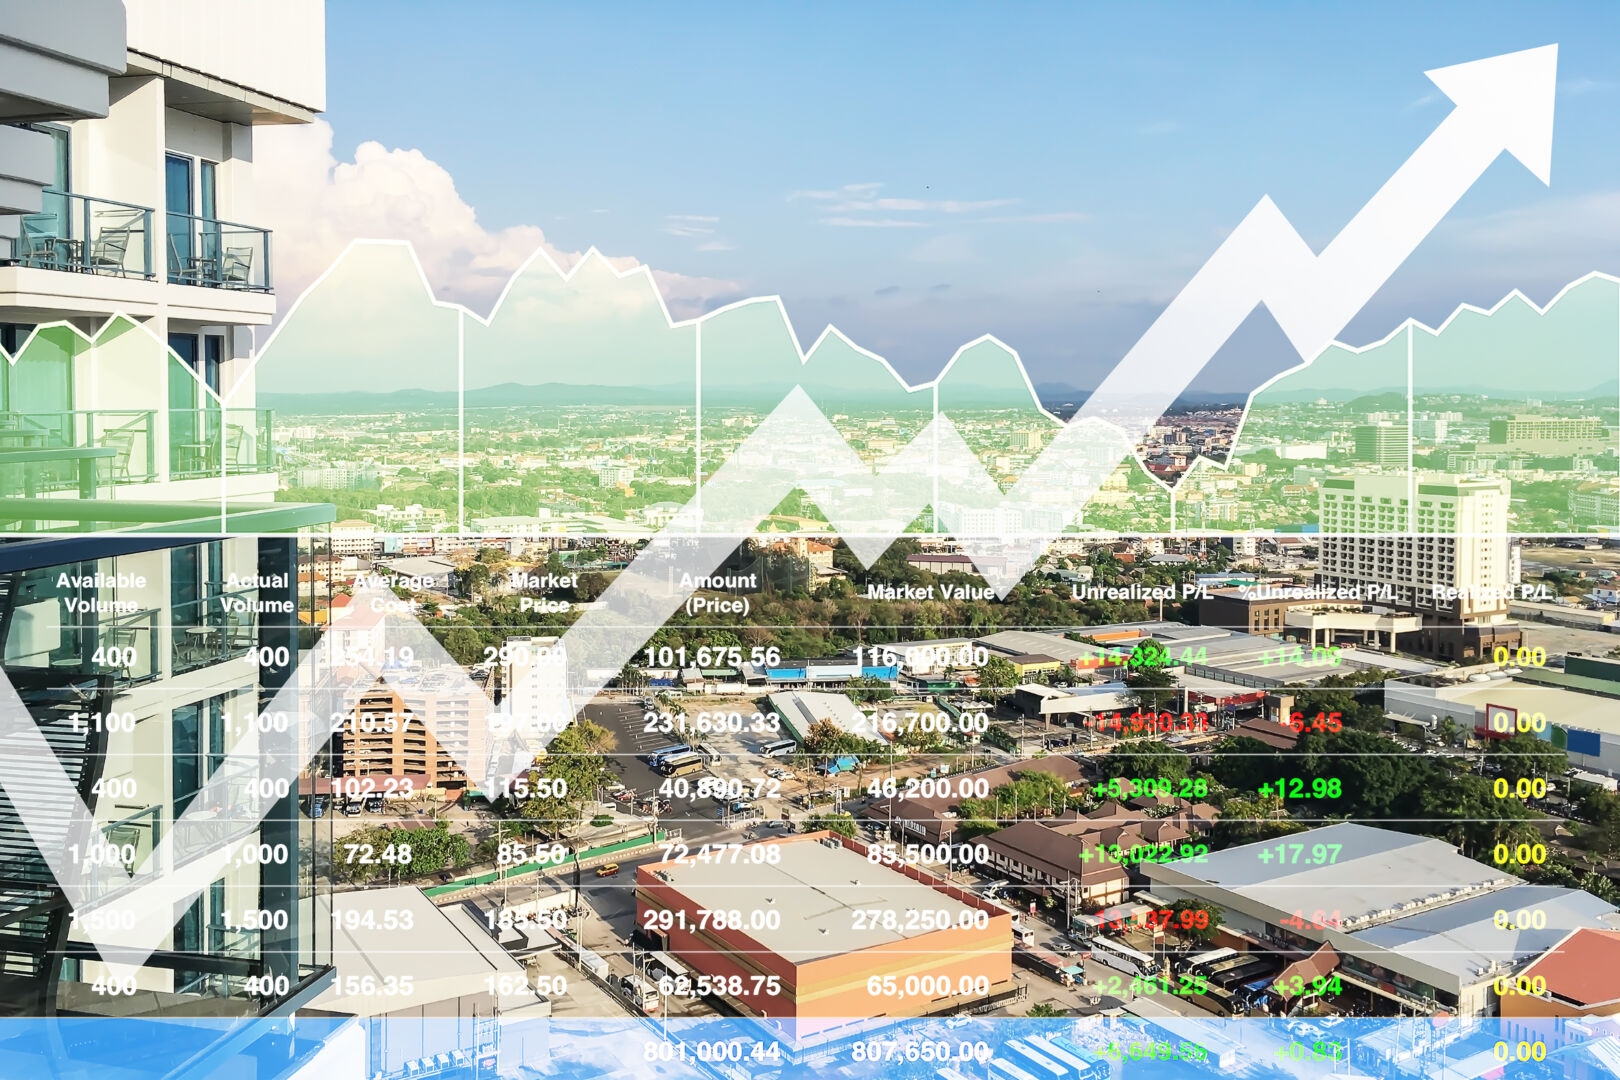 « La data rend-elle vraiment les marchés immobiliers plus transparents et plus sages ? », Claire Juillard sociologue, spécialiste des marchés immobiliers.